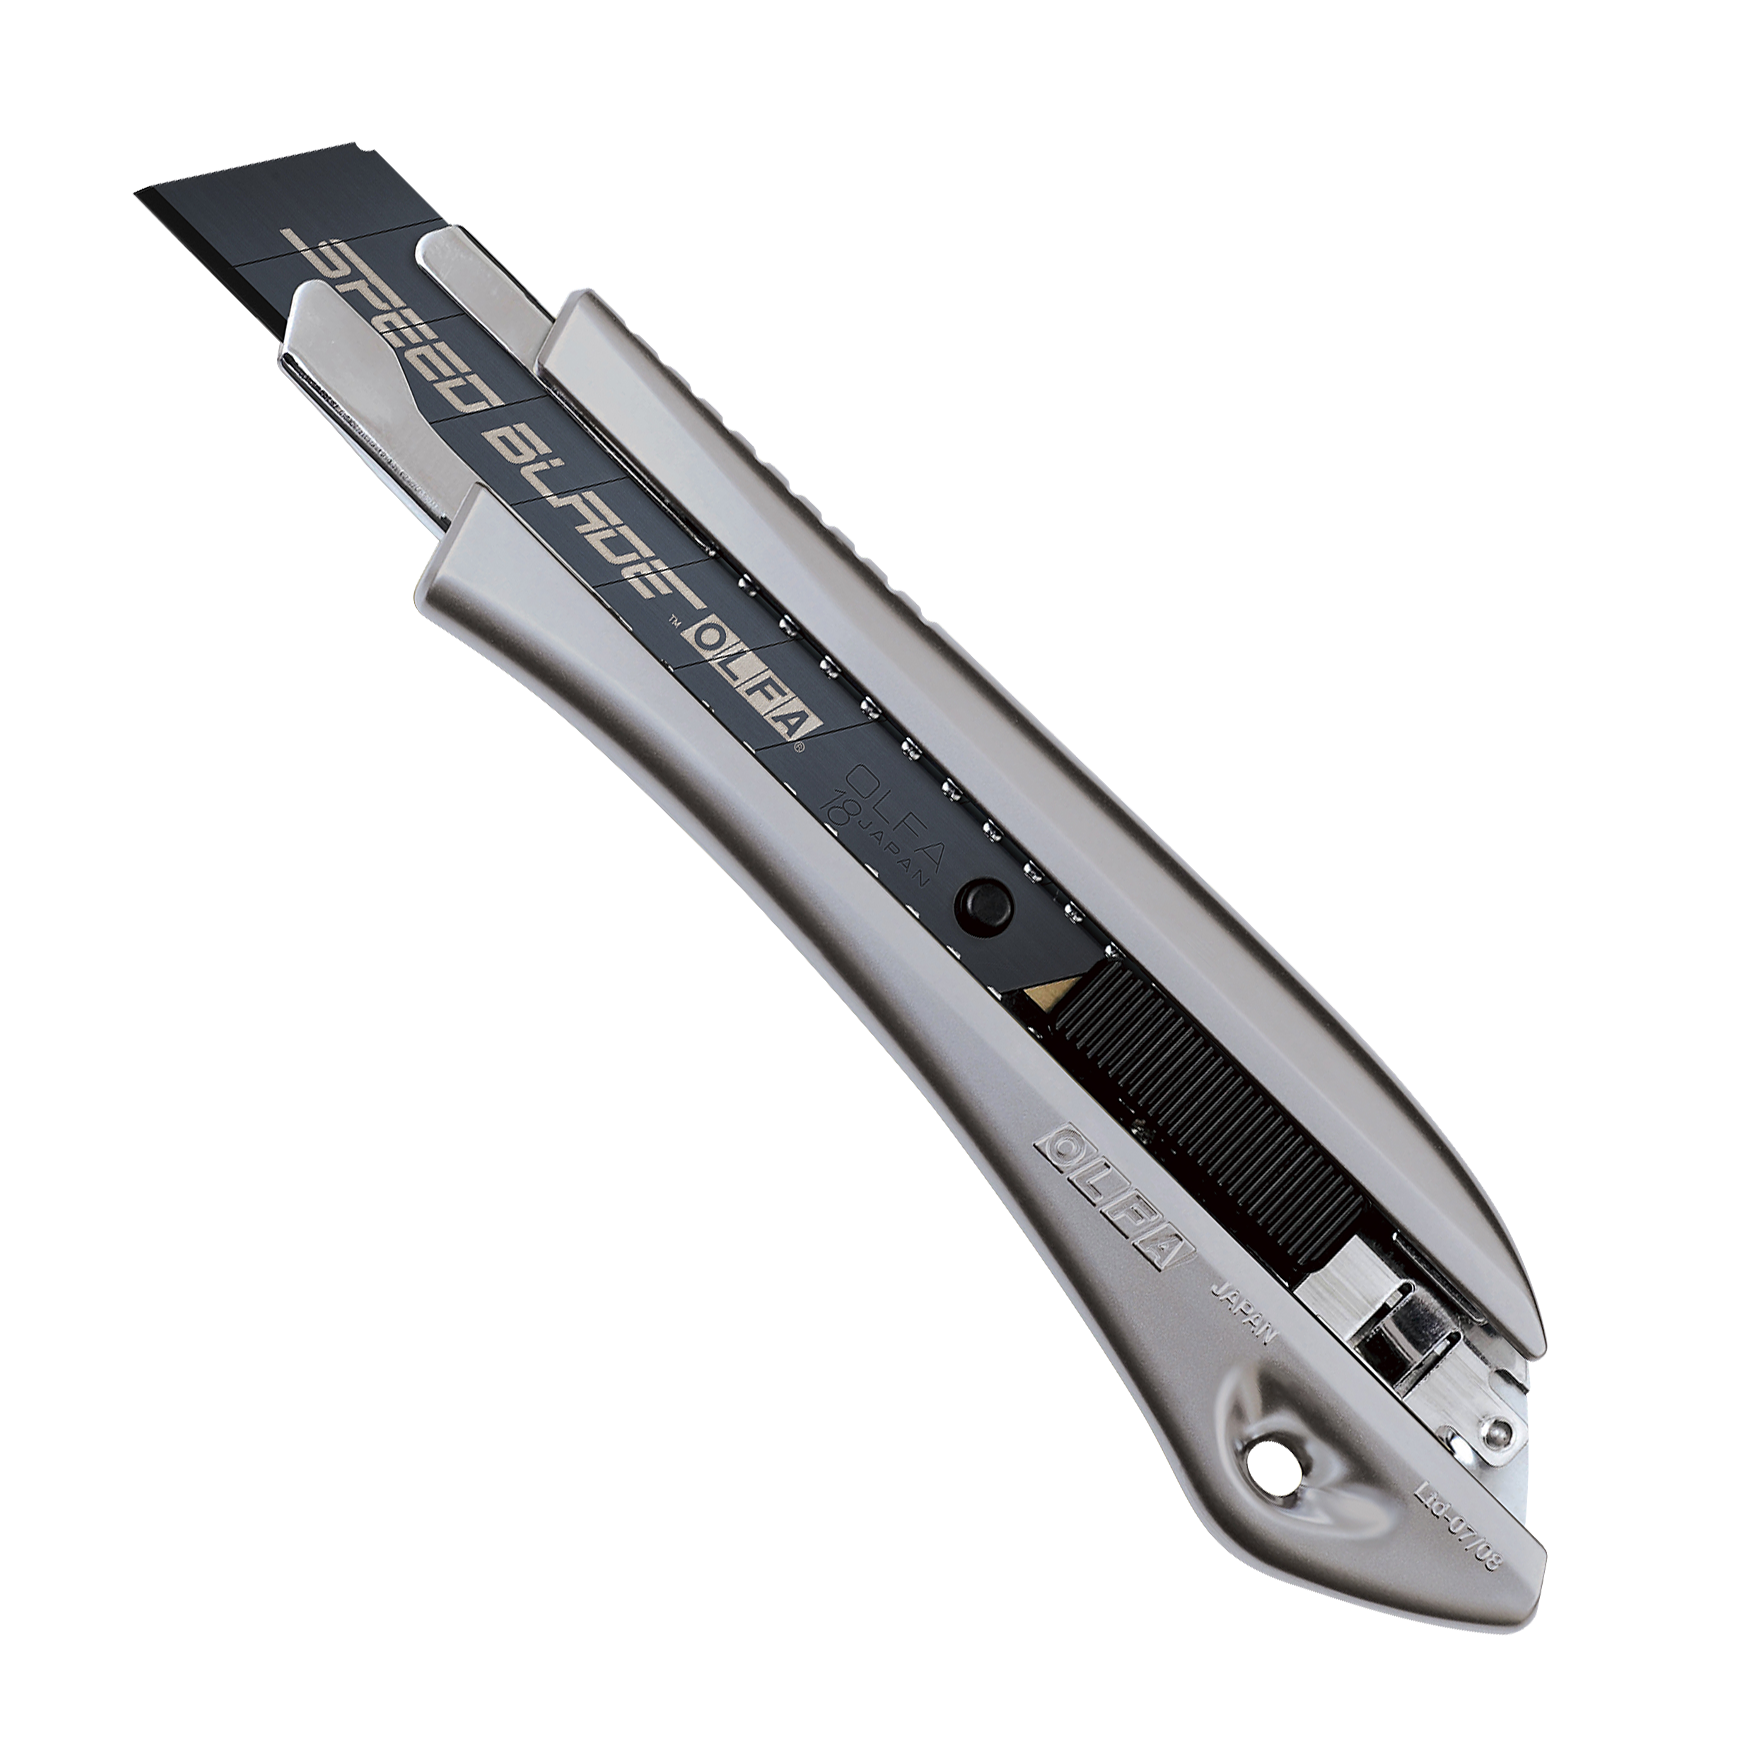 Нож в корпусе LTD с фиксатором AUTOLOCK 18 мм OLFA OL-LTD-AL-LFB - фото